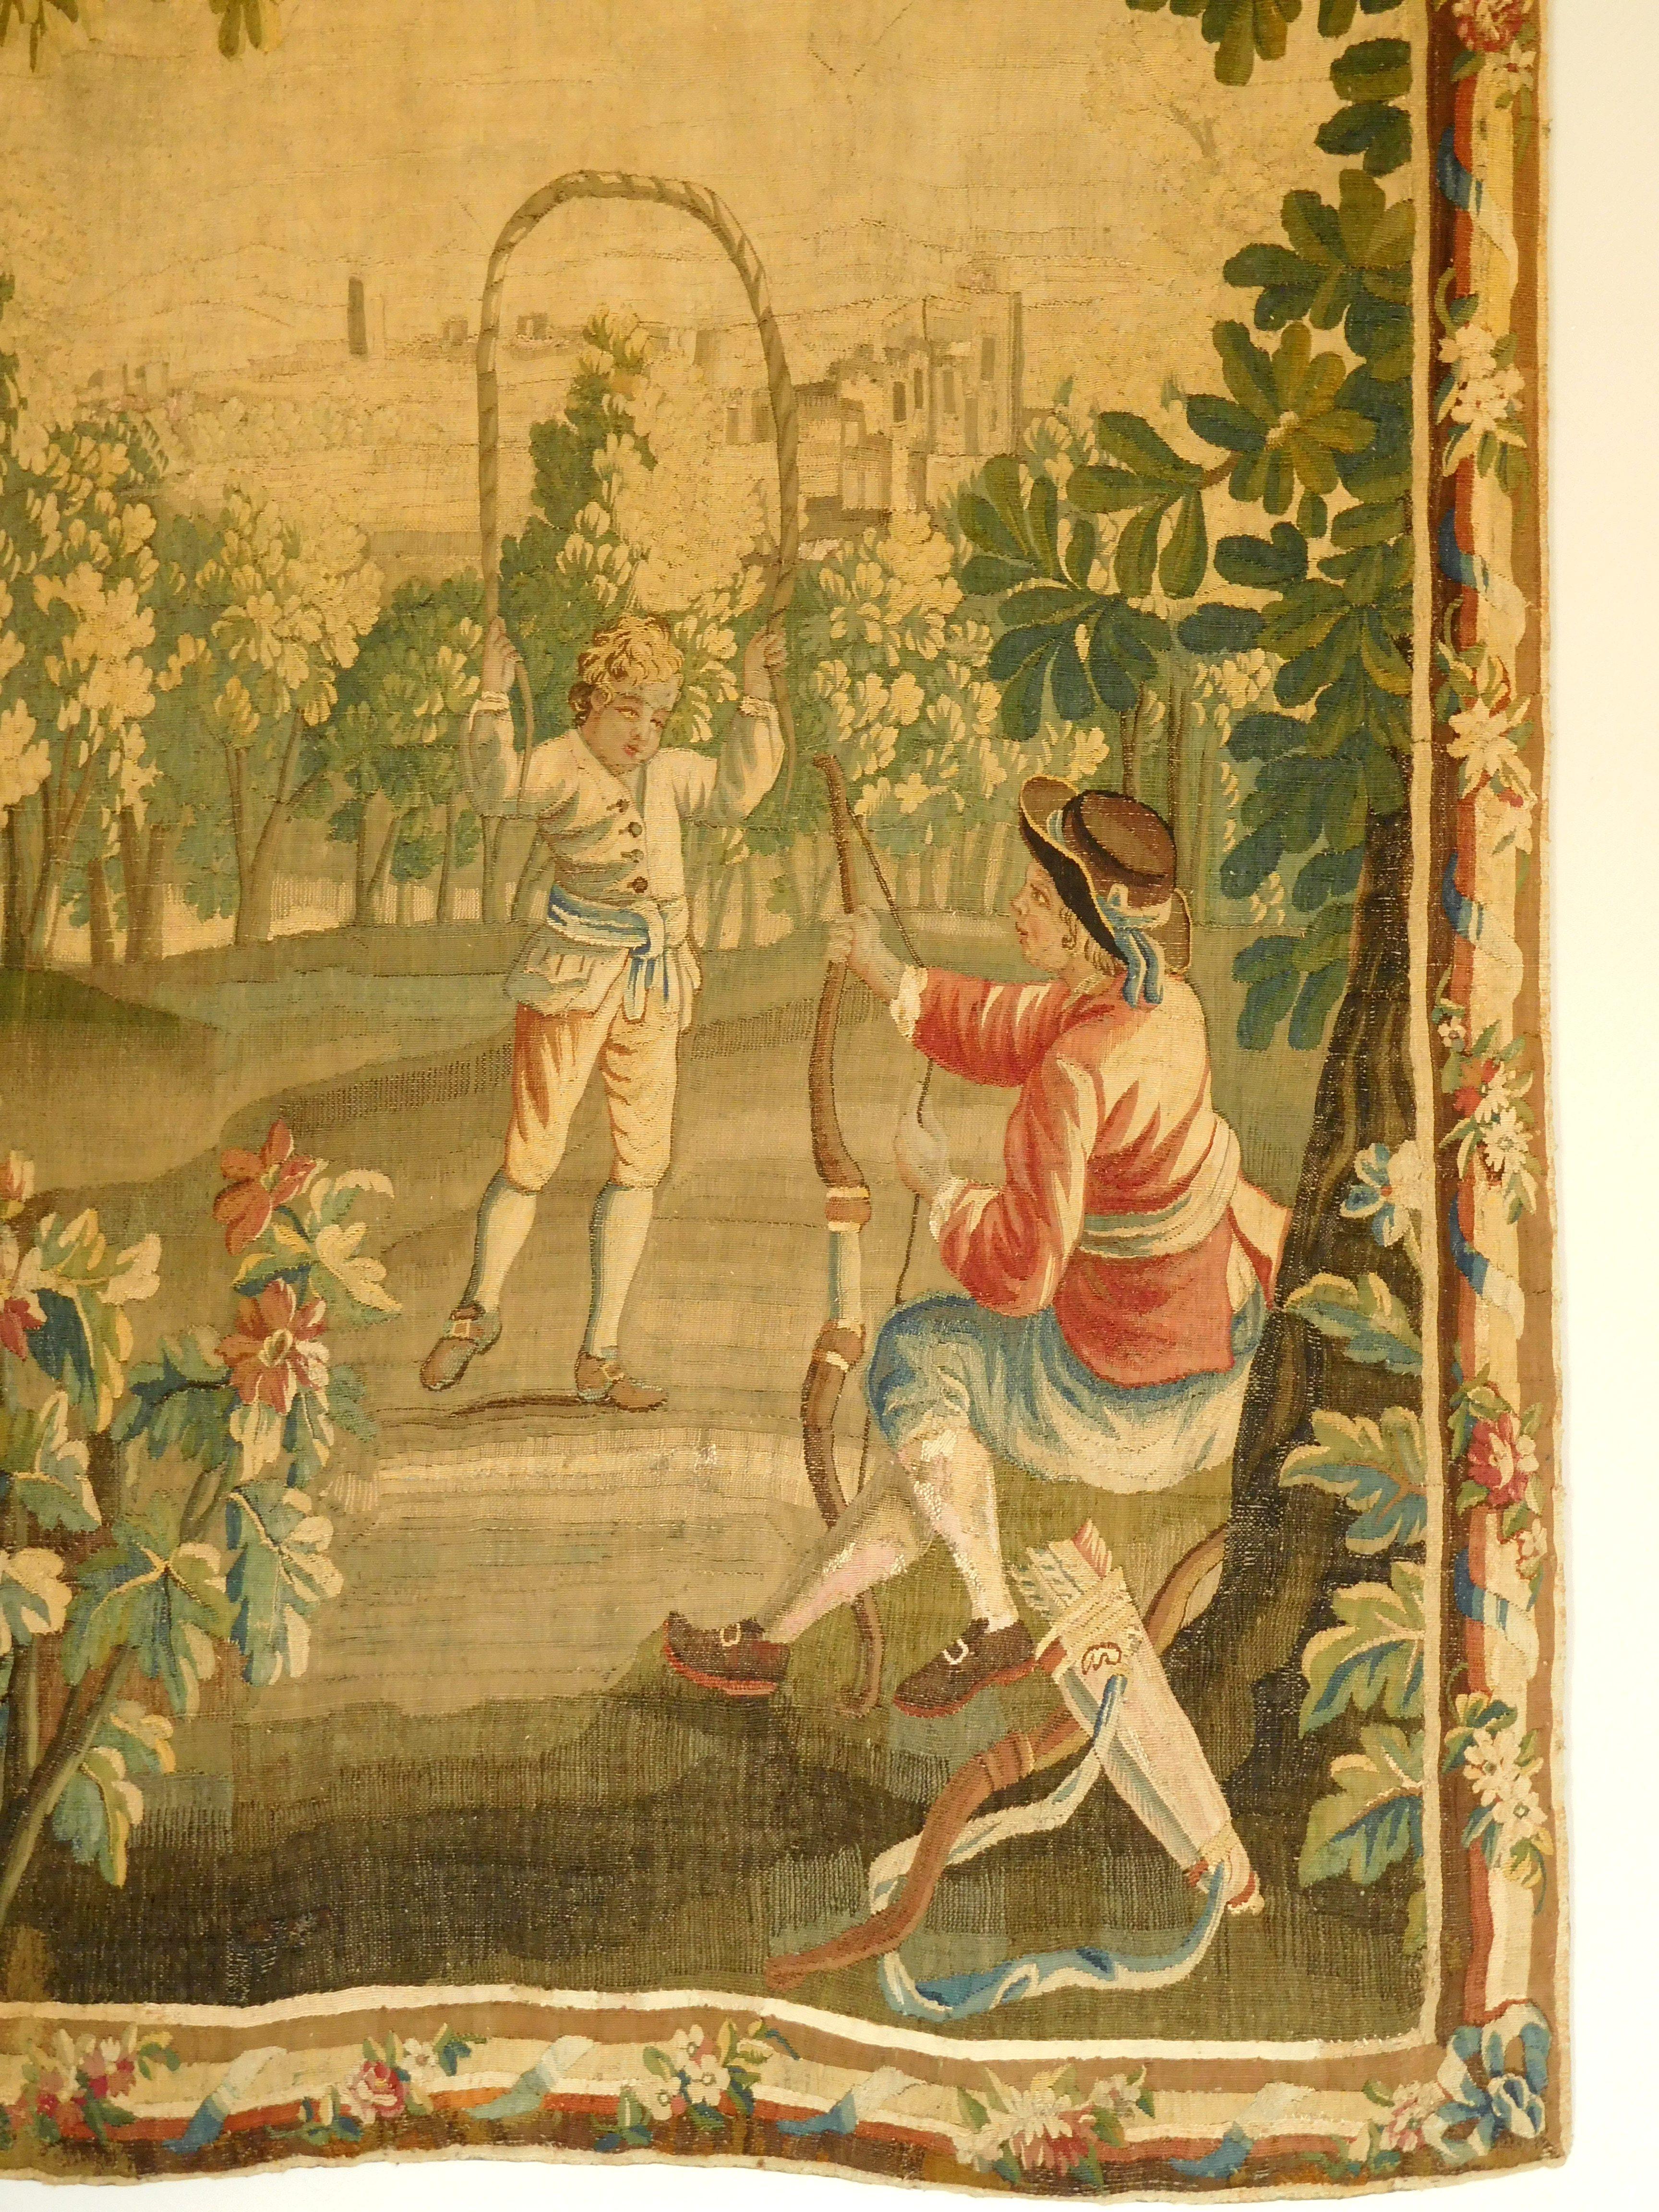 Charmanter Wandteppich aus Wolle und Seide - Herstellung aus dem 18. Jahrhundert (Louis XVI. um 1780), der Manufaktur Aubusson zugeschrieben.

Es zeigt zwei Jungen, die im Garten spielen: einer schießt mit dem Bogen und der andere spielt